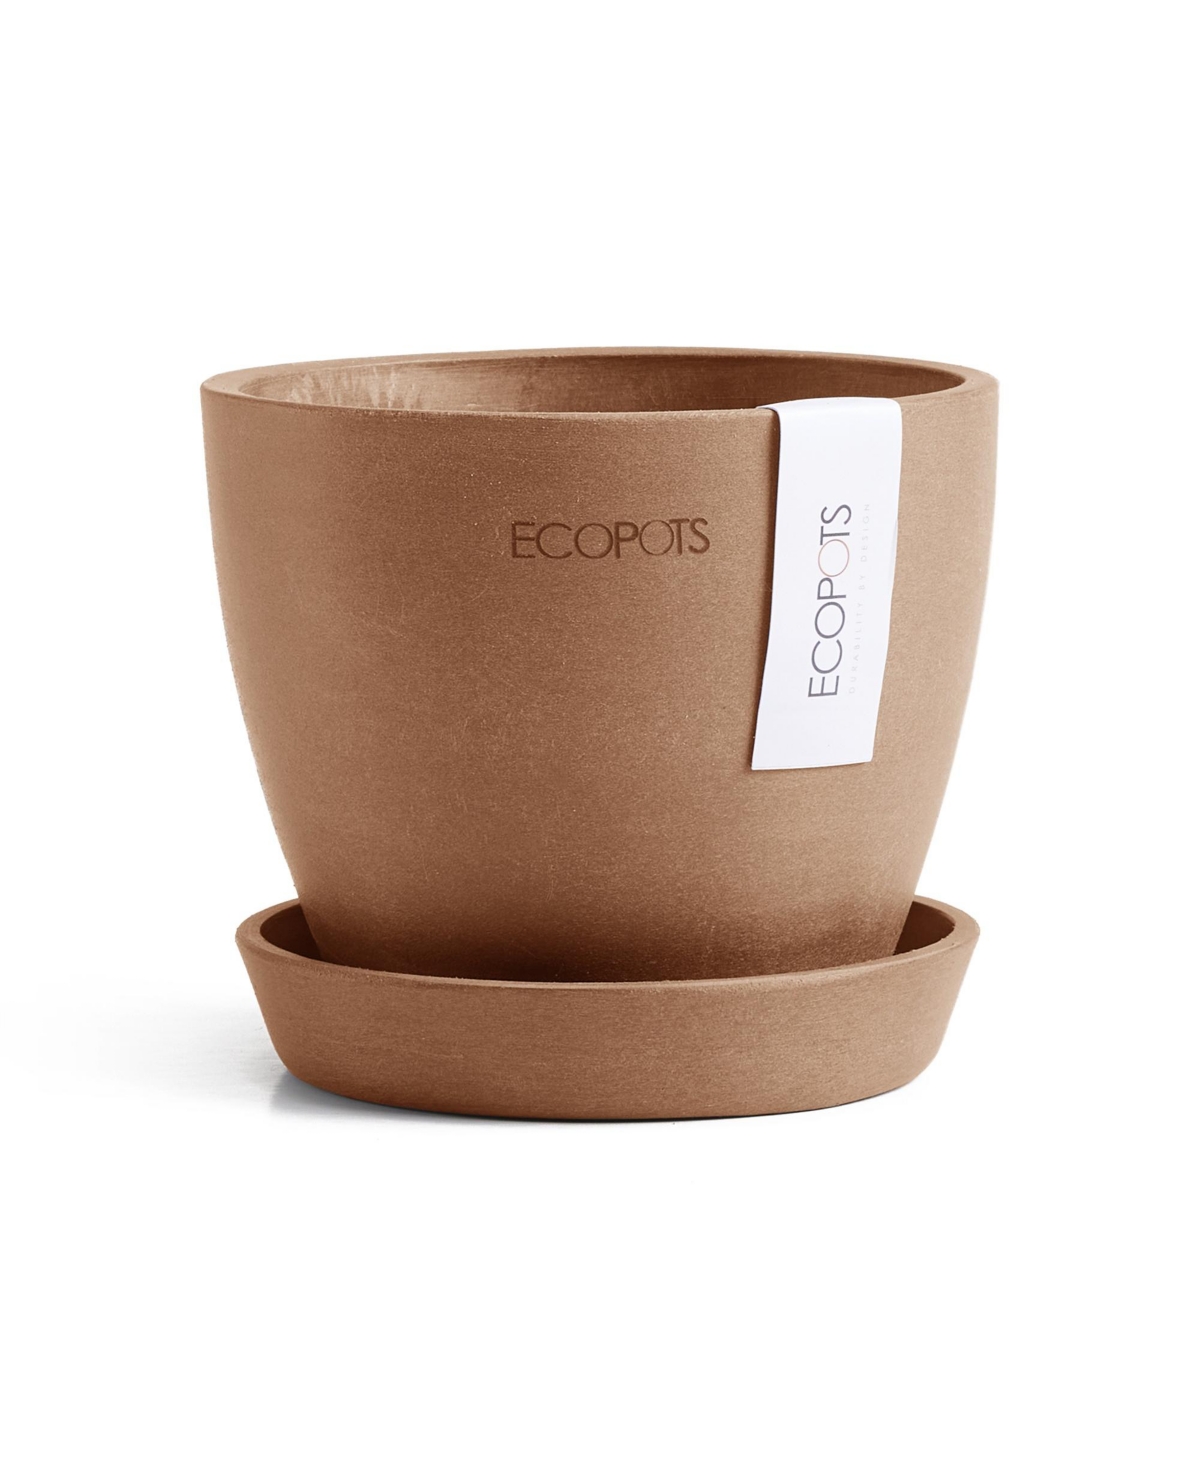 Eco pots Antwerp Indoor and Outdoor Planter with Saucer, 4.5in - Terracotta